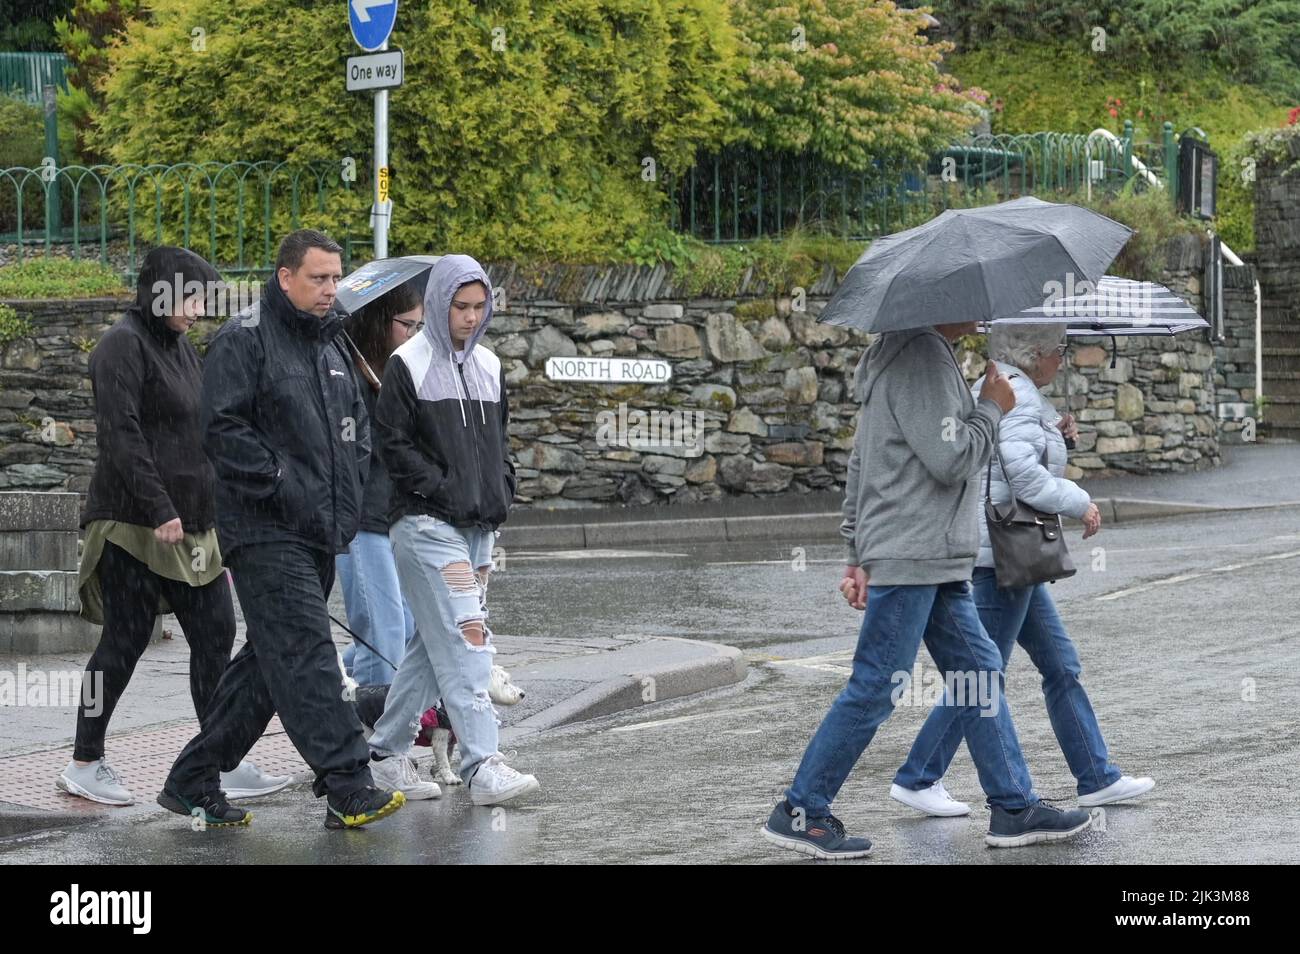 Ambleside, Cumbria, Großbritannien. Juli 30. 2022. Besucher von Ambleside, Cumbria, werden unter Regenschirmen geschützt, während schwere Regengüsse die Region treffen. Trotz des Regens, der für Gärtner eine willkommene Erleichterung darstellt, hangen die Temperaturen an dem, was als „trockenster Juli seit 1911“ bezeichnet wurde, immer noch um die 18 Grad celsius. Bild von: Michael Scott / Alamy Live News Stockfoto